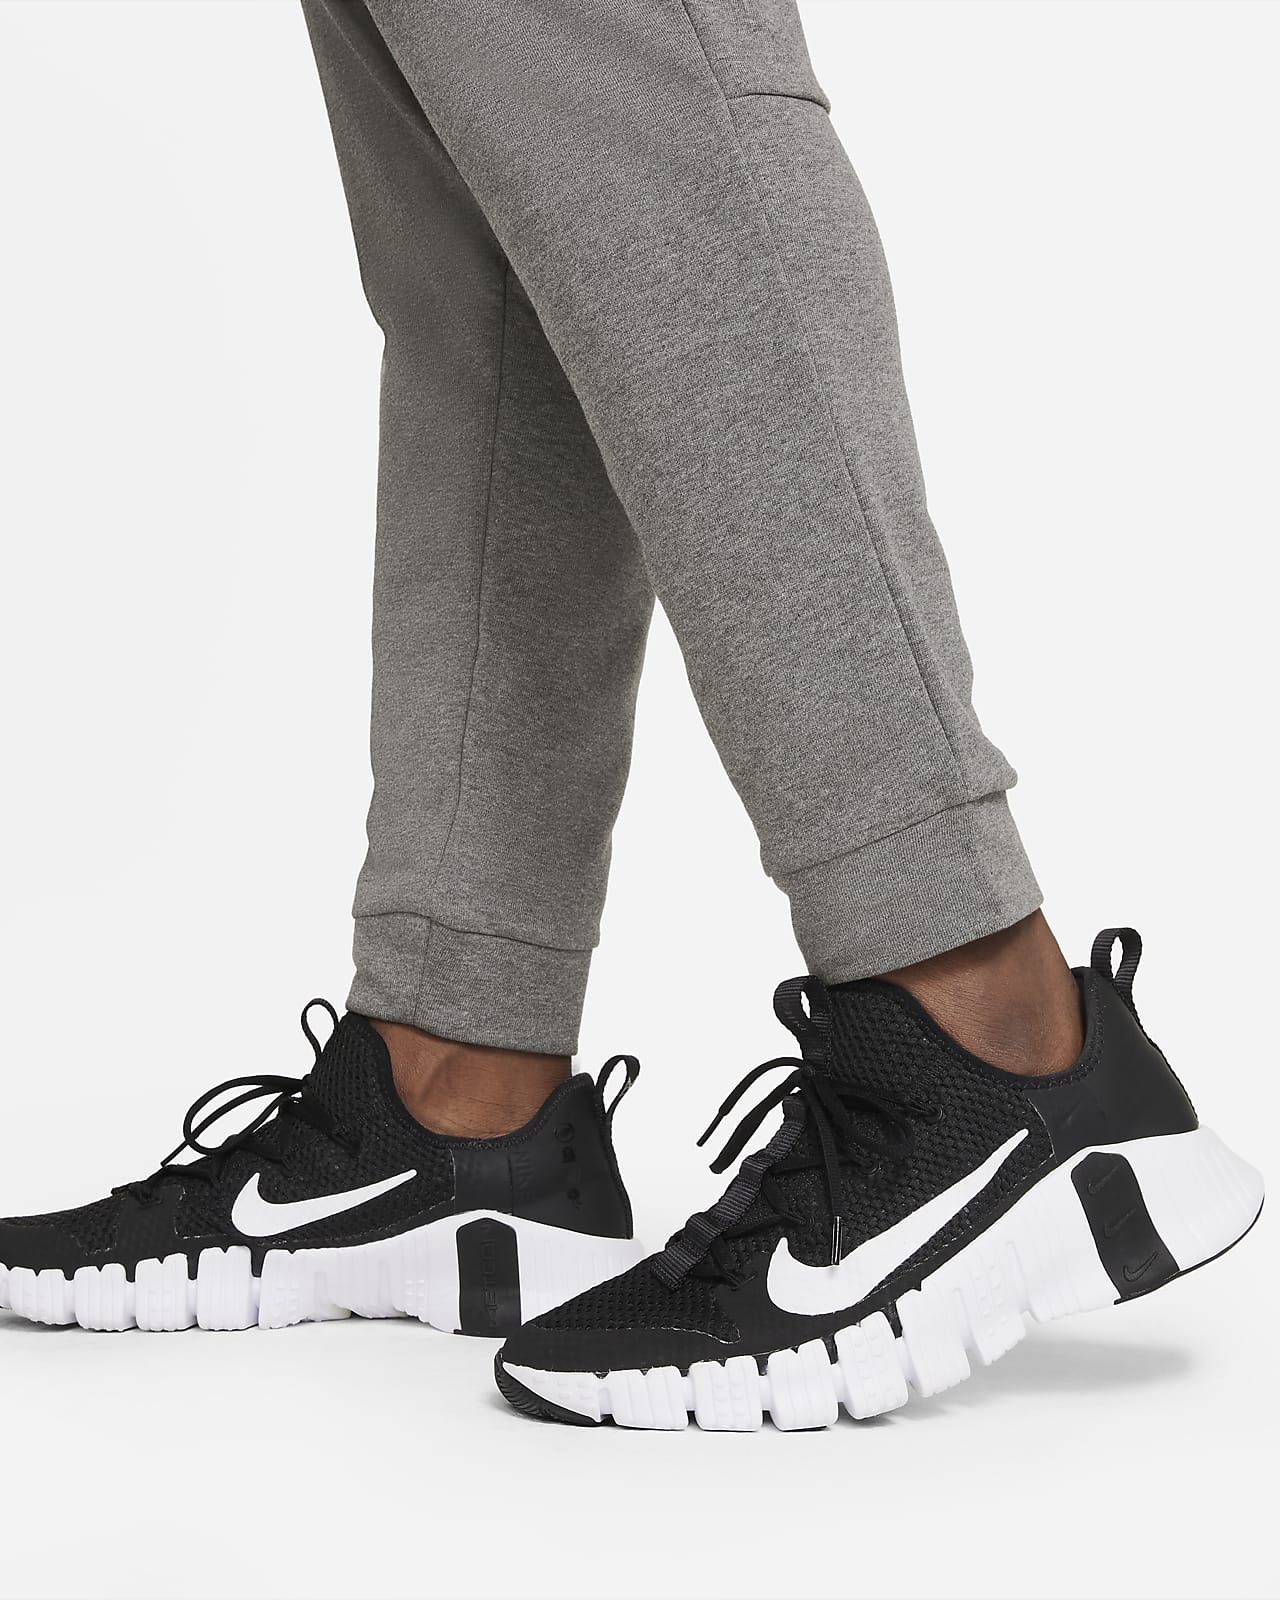 Nike Sweatpants Mens Adult XL Black Standard Fit Tapered Leg New